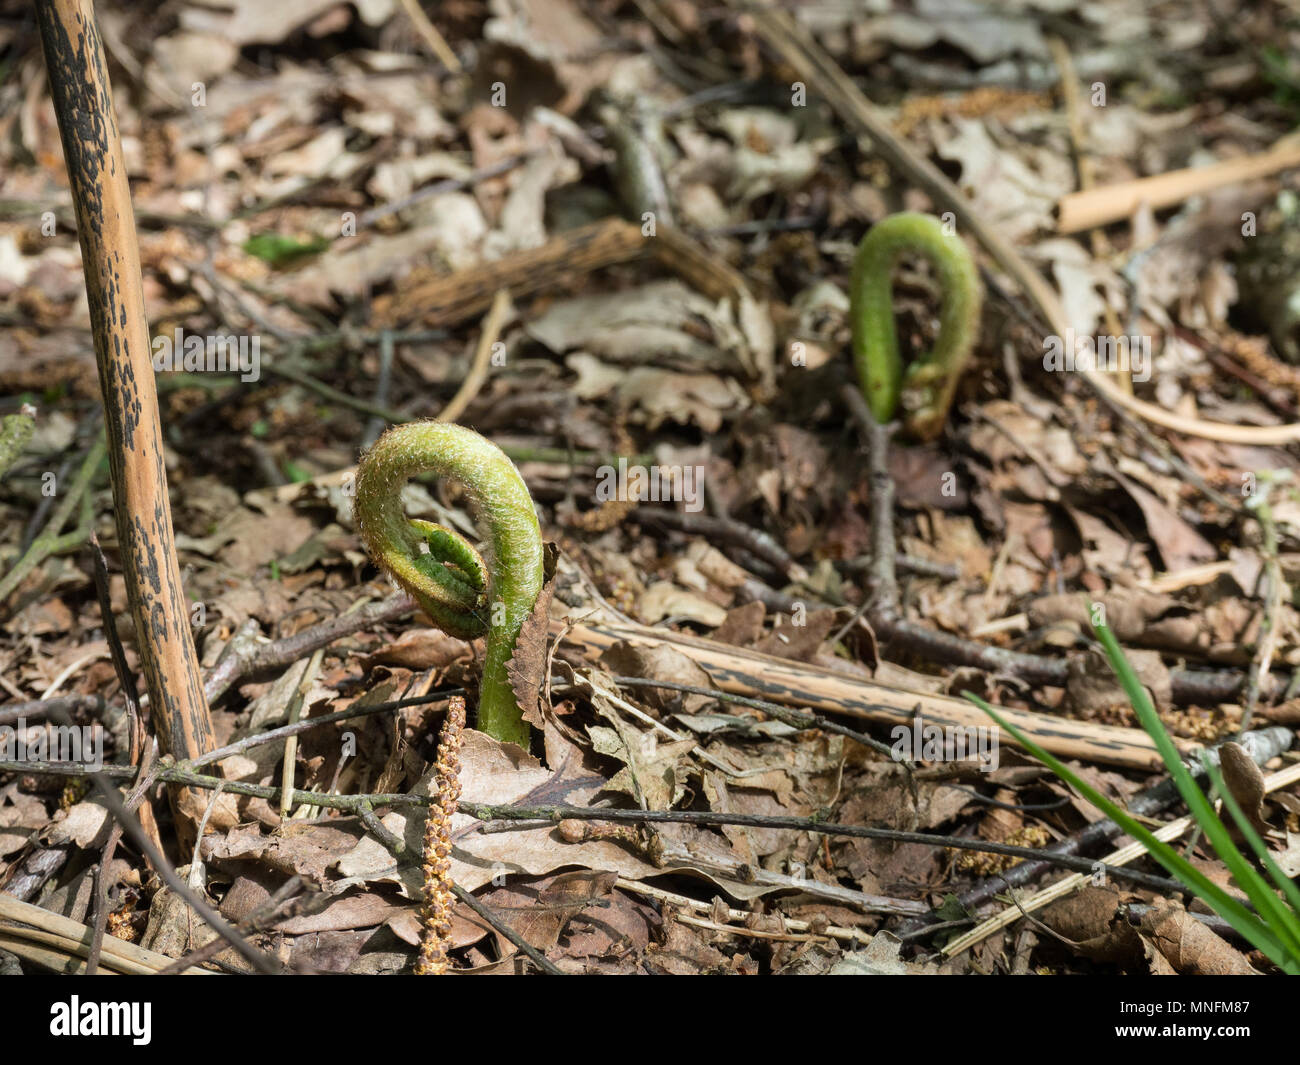 Unfurling bracken fronds amongst the brown litter of last seasons growth Stock Photo